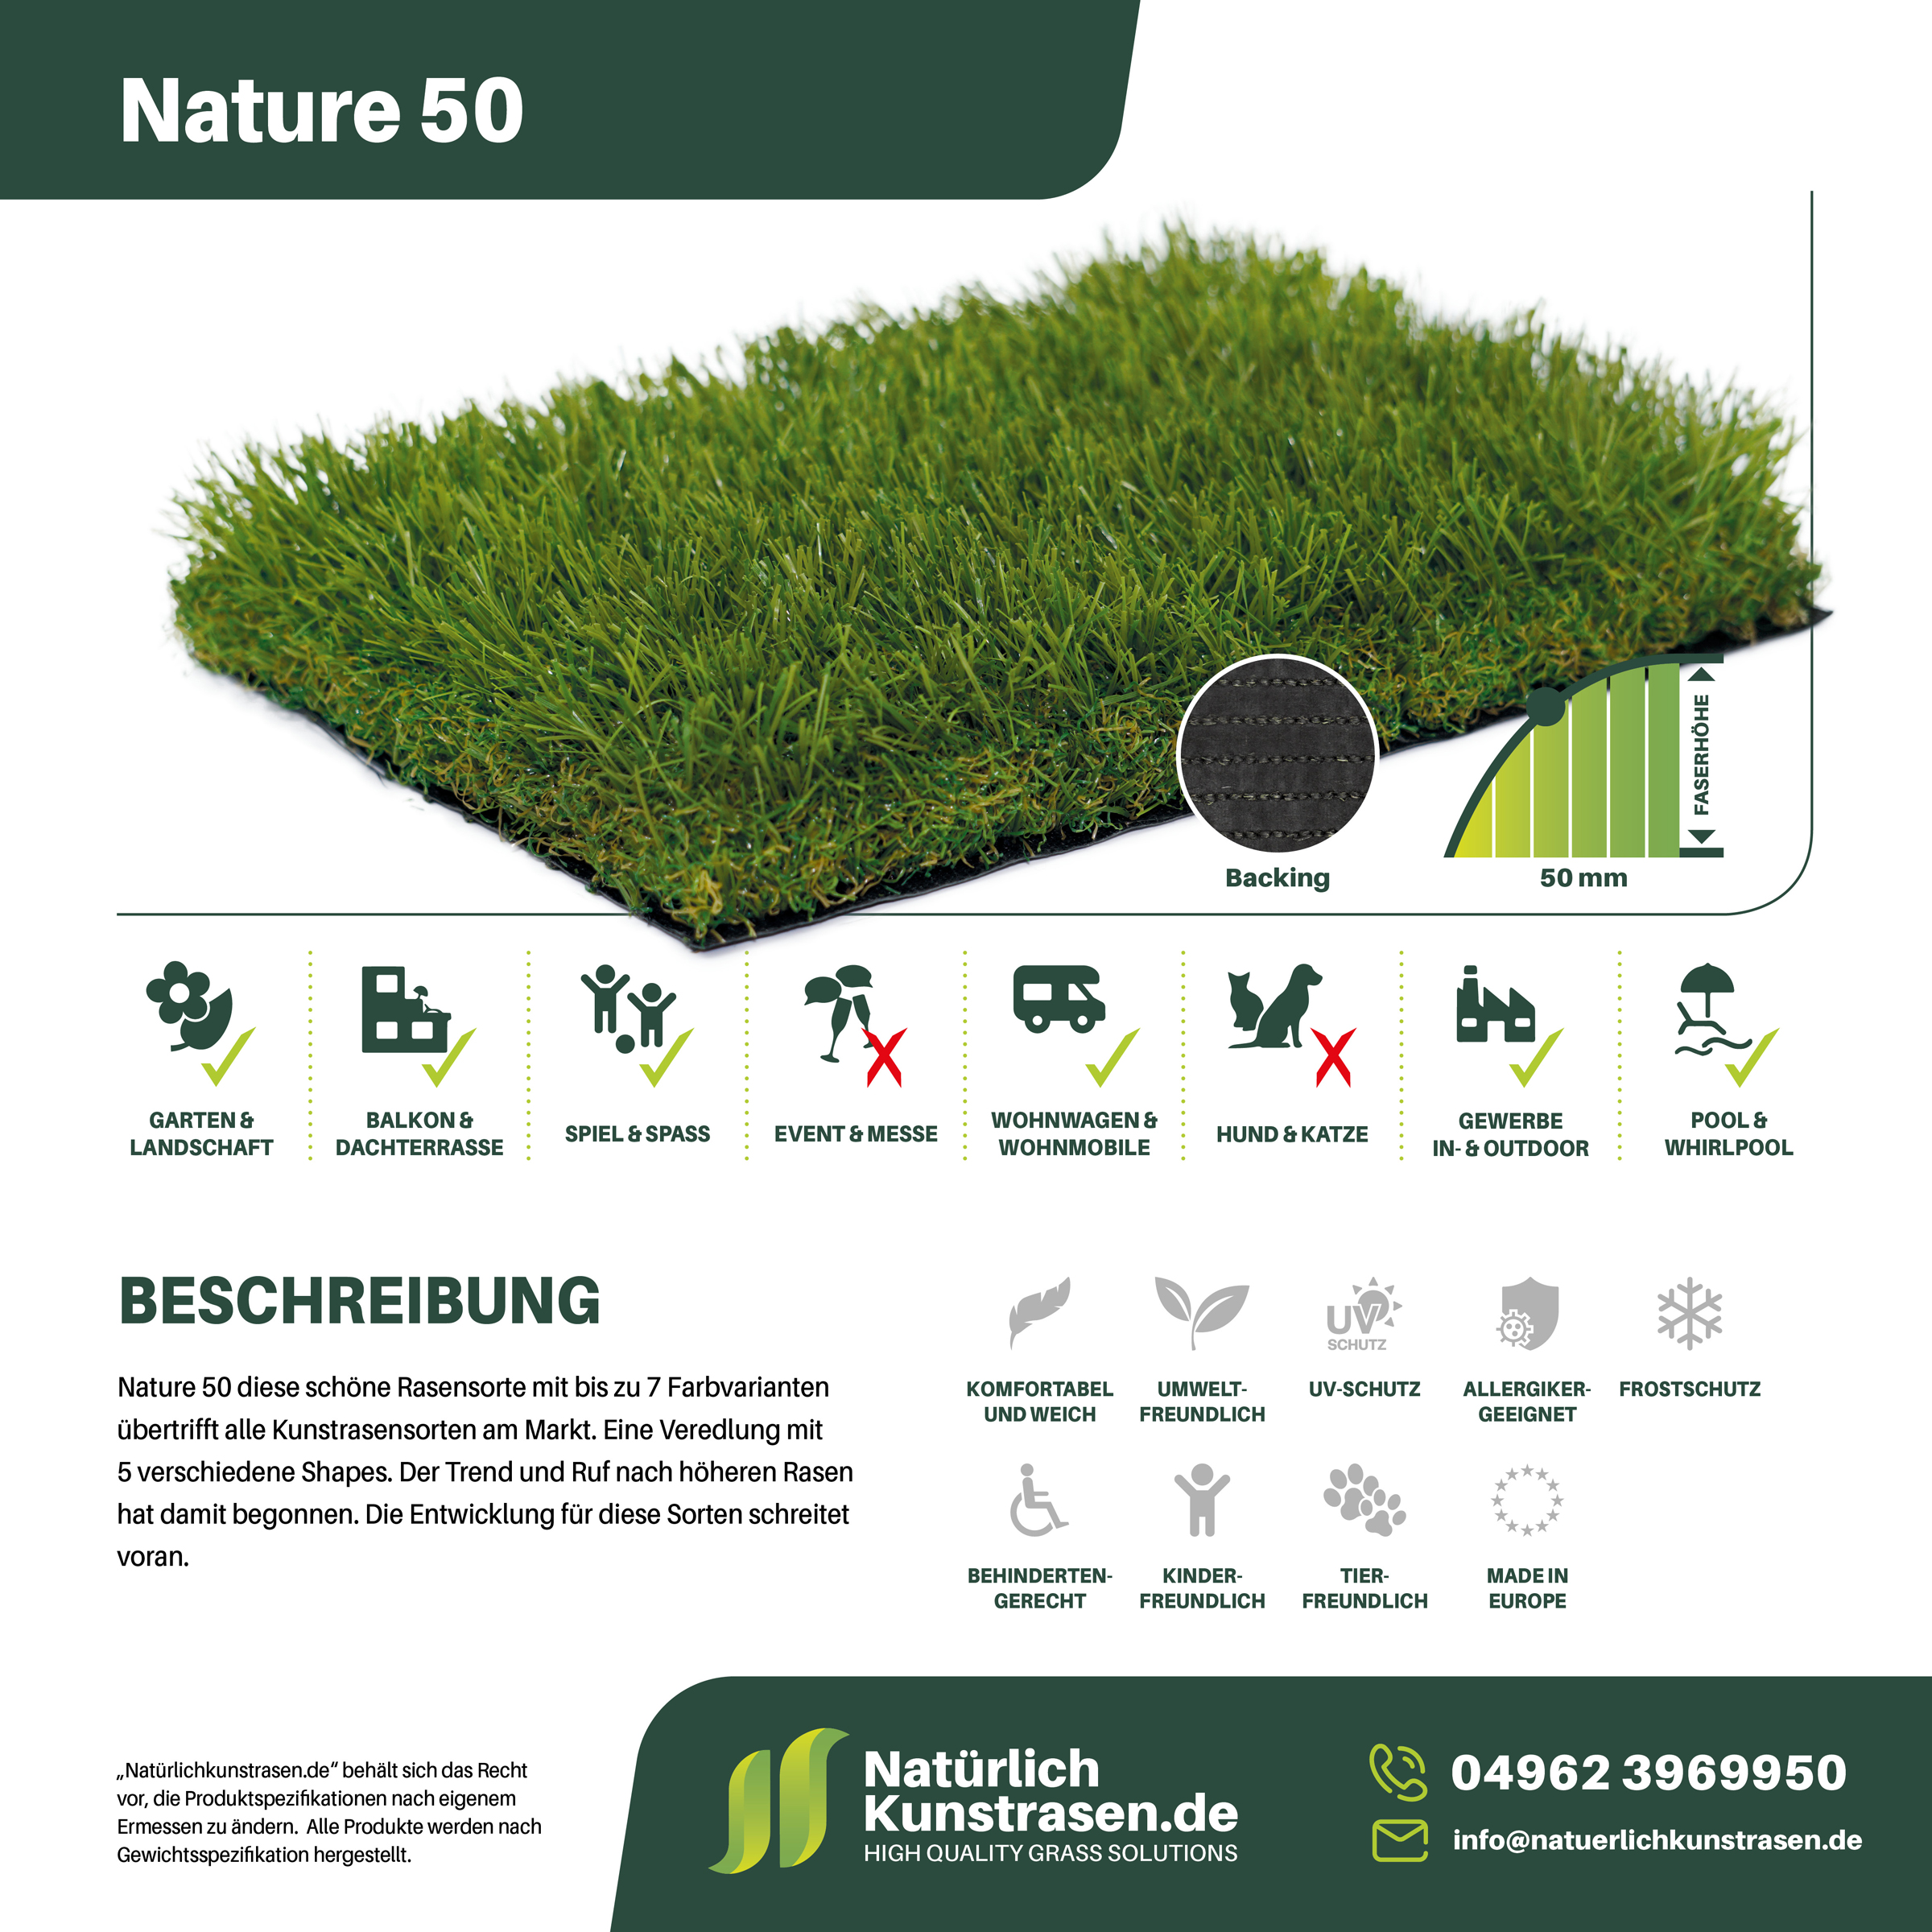 Kunstrasen-Produkte+Anwendungsgebiete+Name-Nature-50.jpg